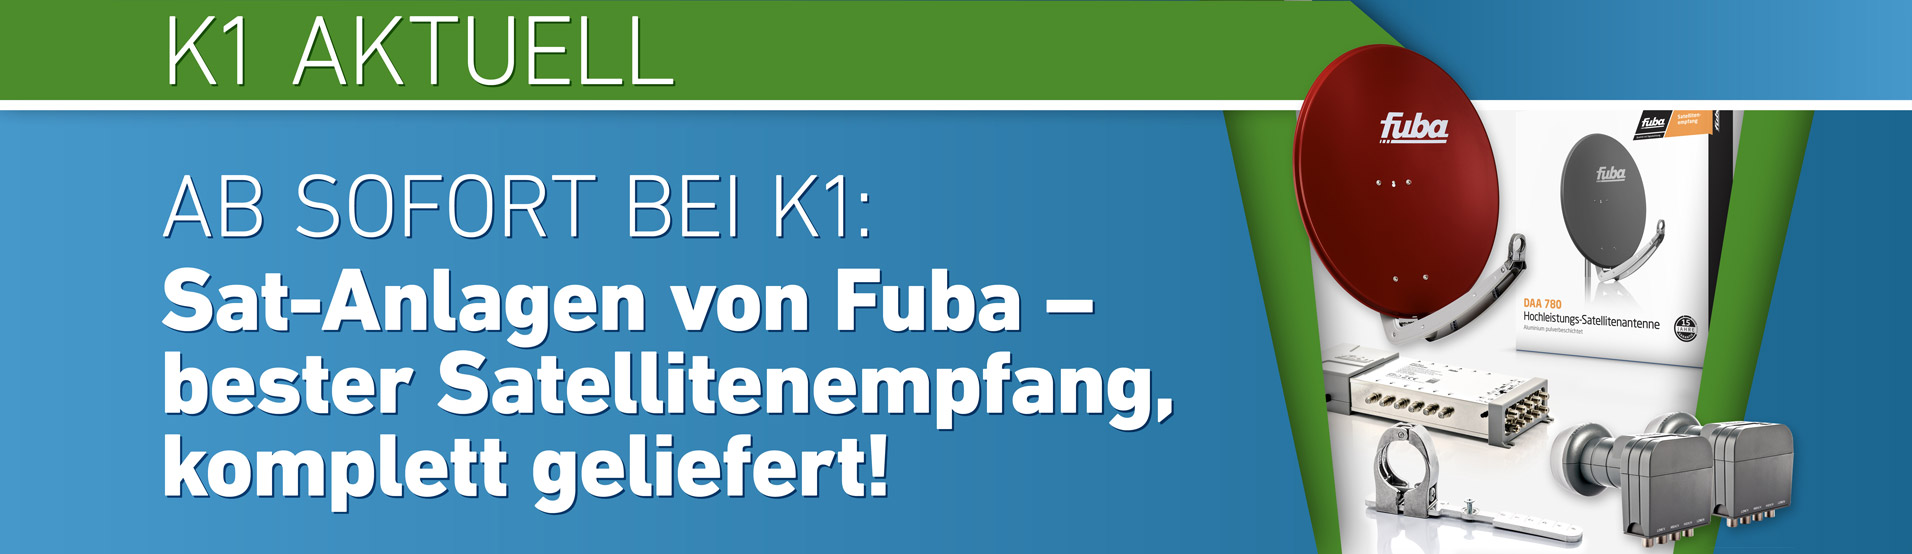 K1 Aktuell Sat-Anlagen von Fuba – bester Satellitenempfang, komplett geliefert!